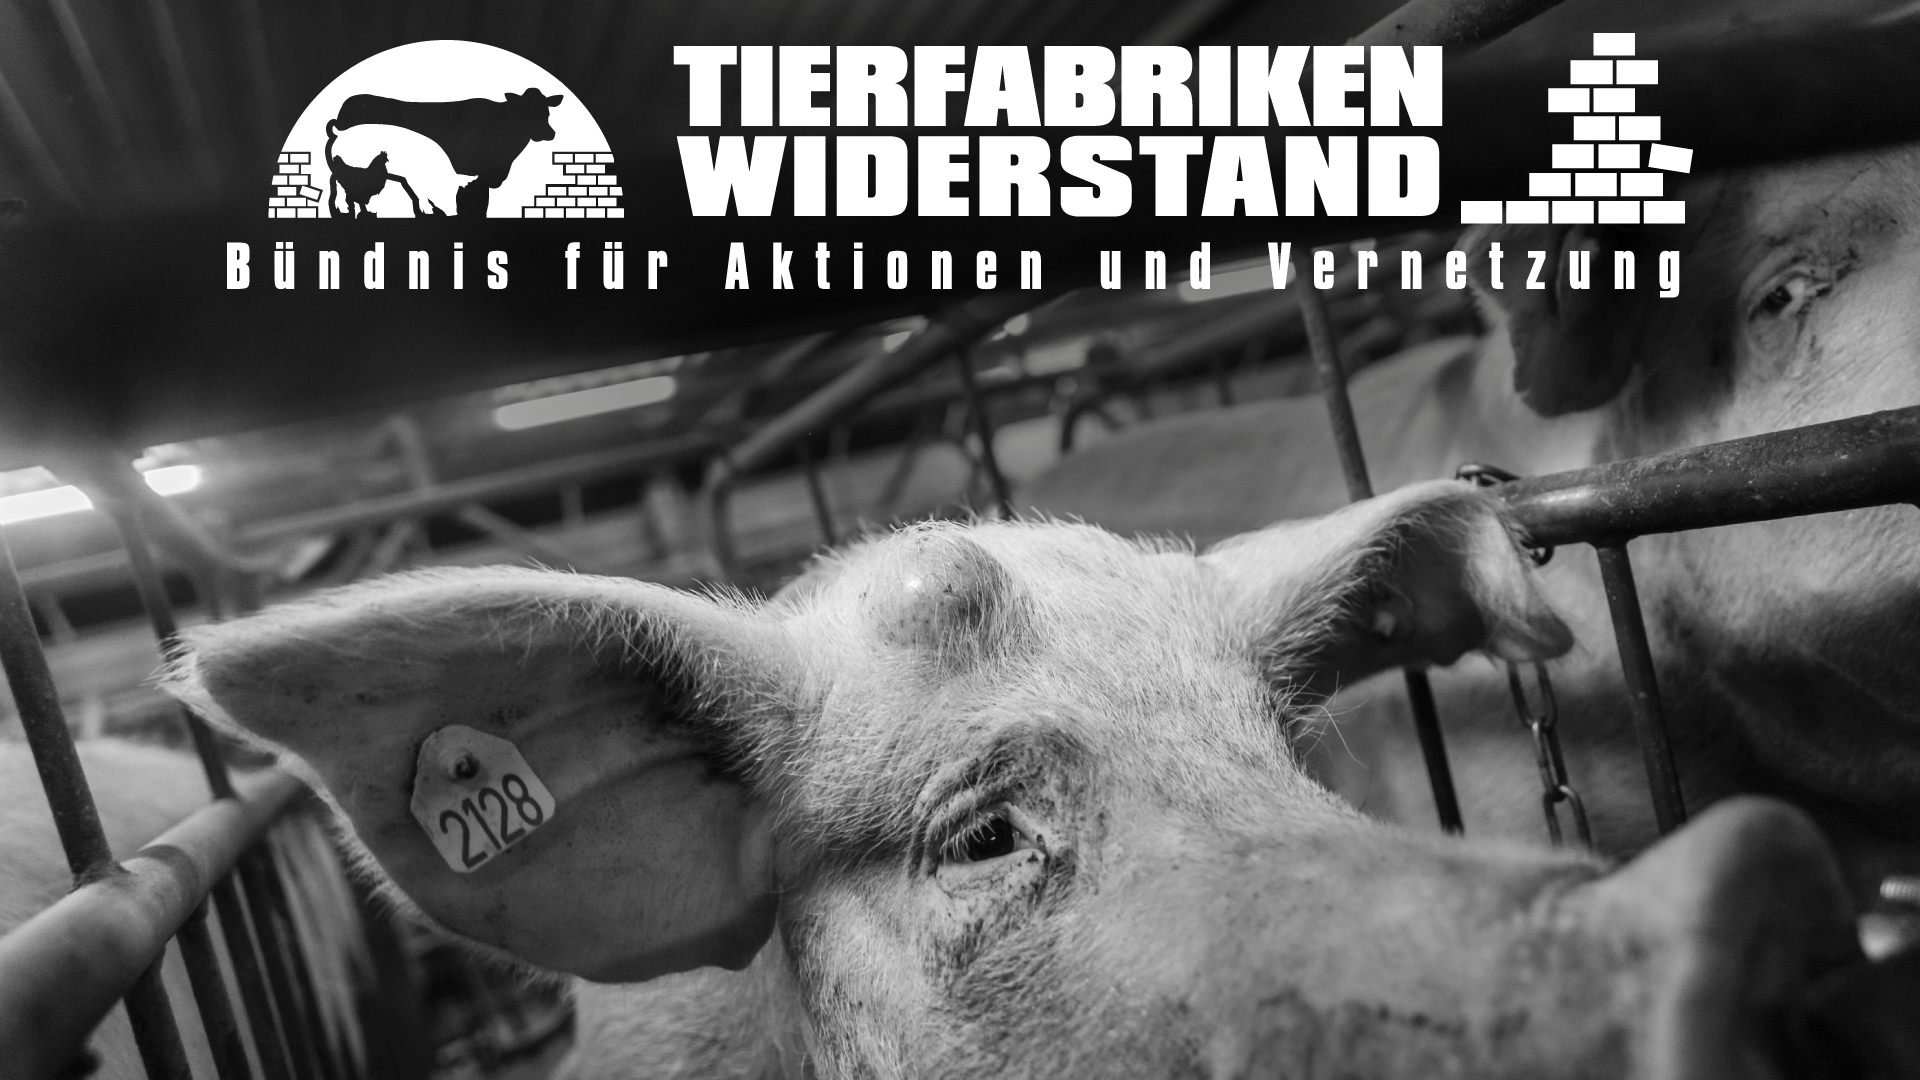 (c) Tierfabriken-widerstand.org